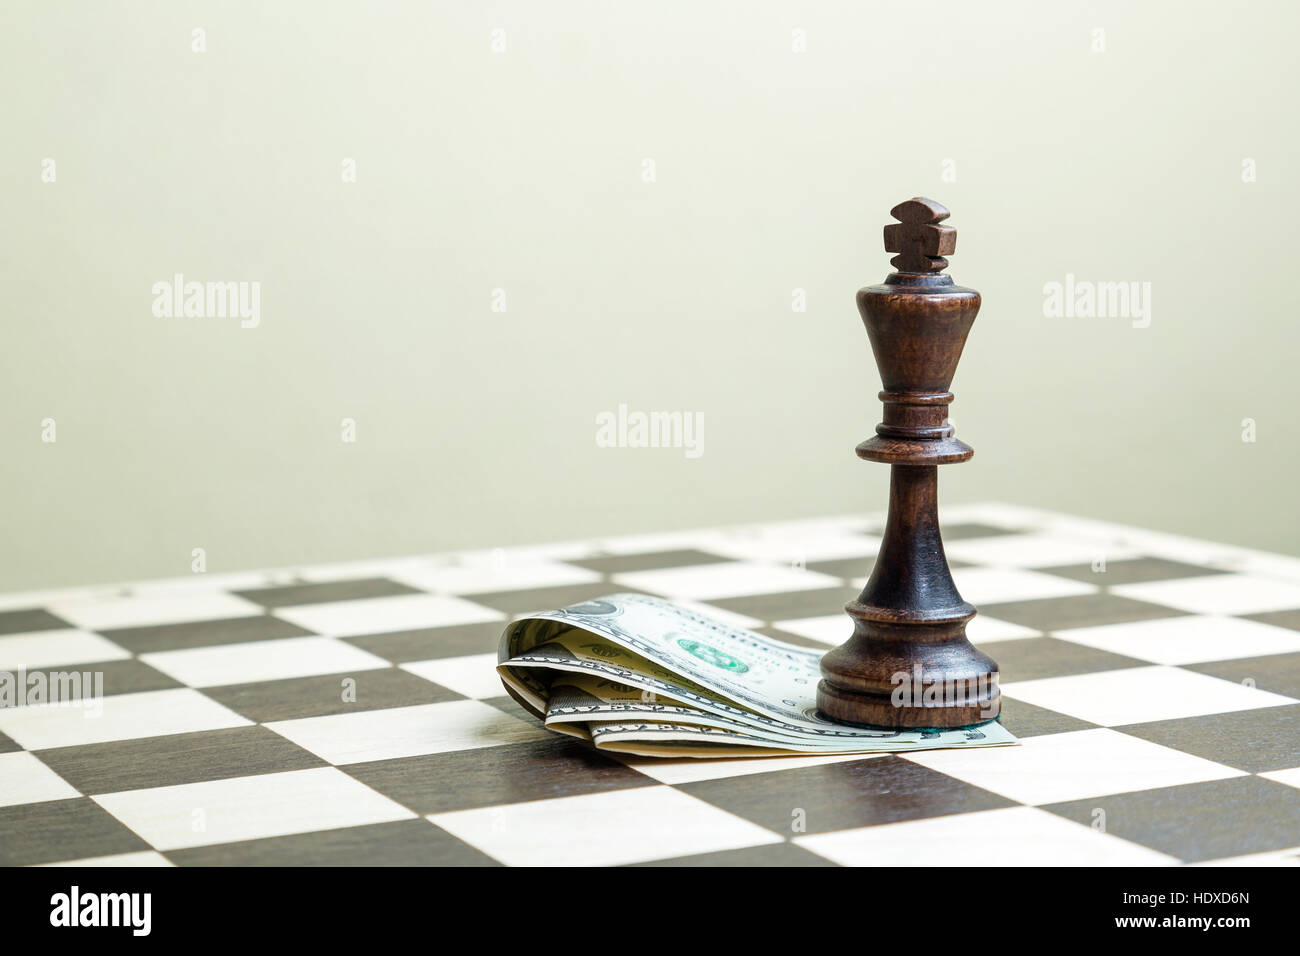 Goldkönig Schach Stück Stand Vor Der Pfandgegenstand Auf Schwarzem